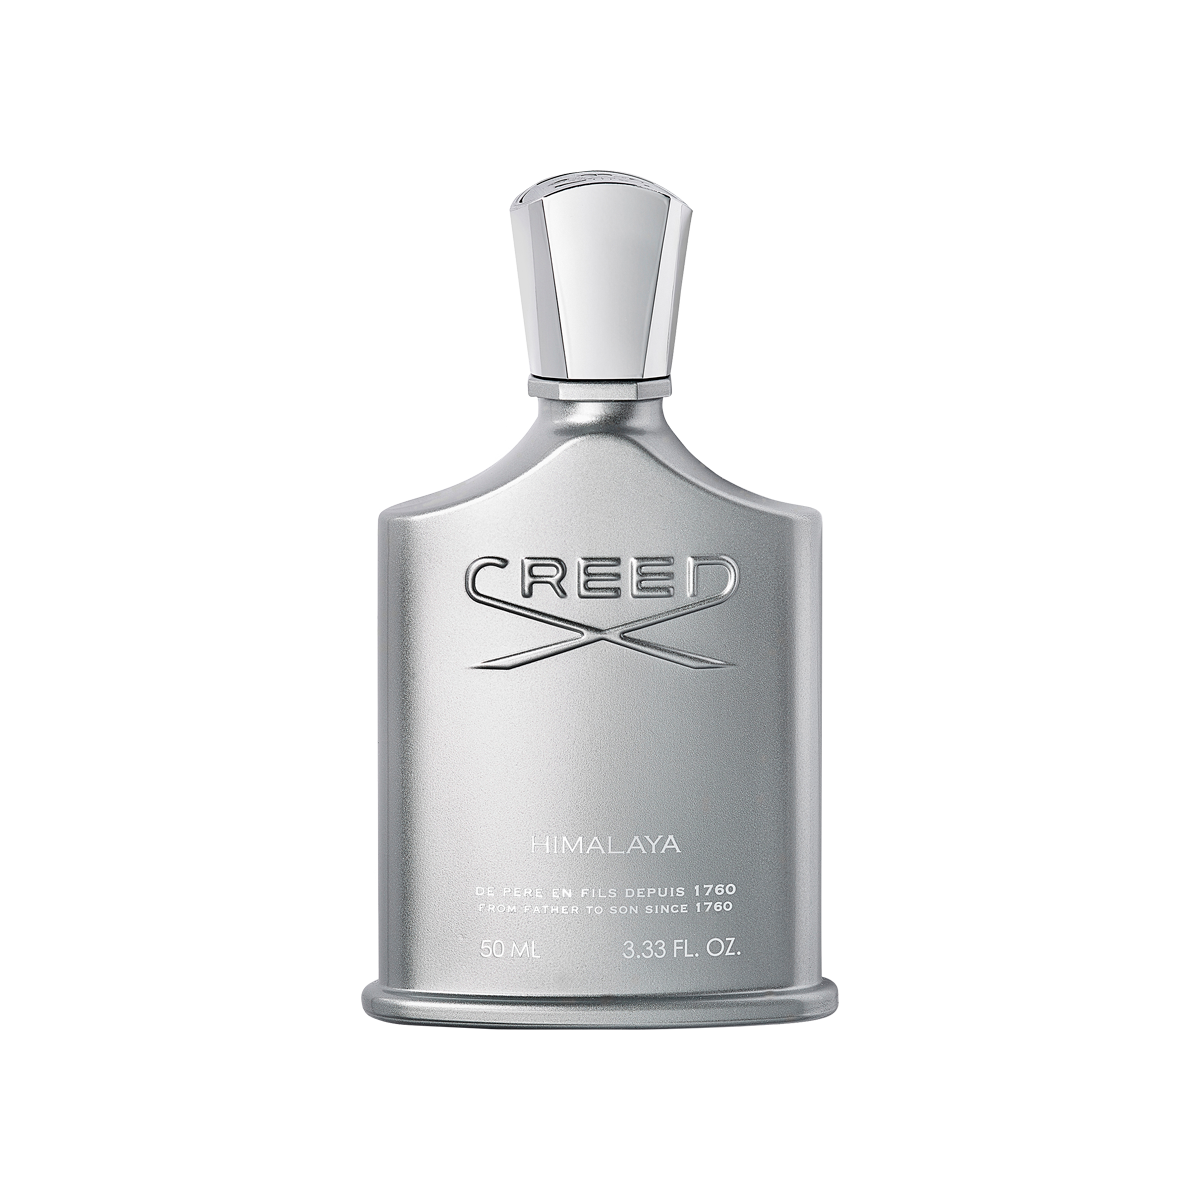 Creed - Himalaya Eau de Parfum